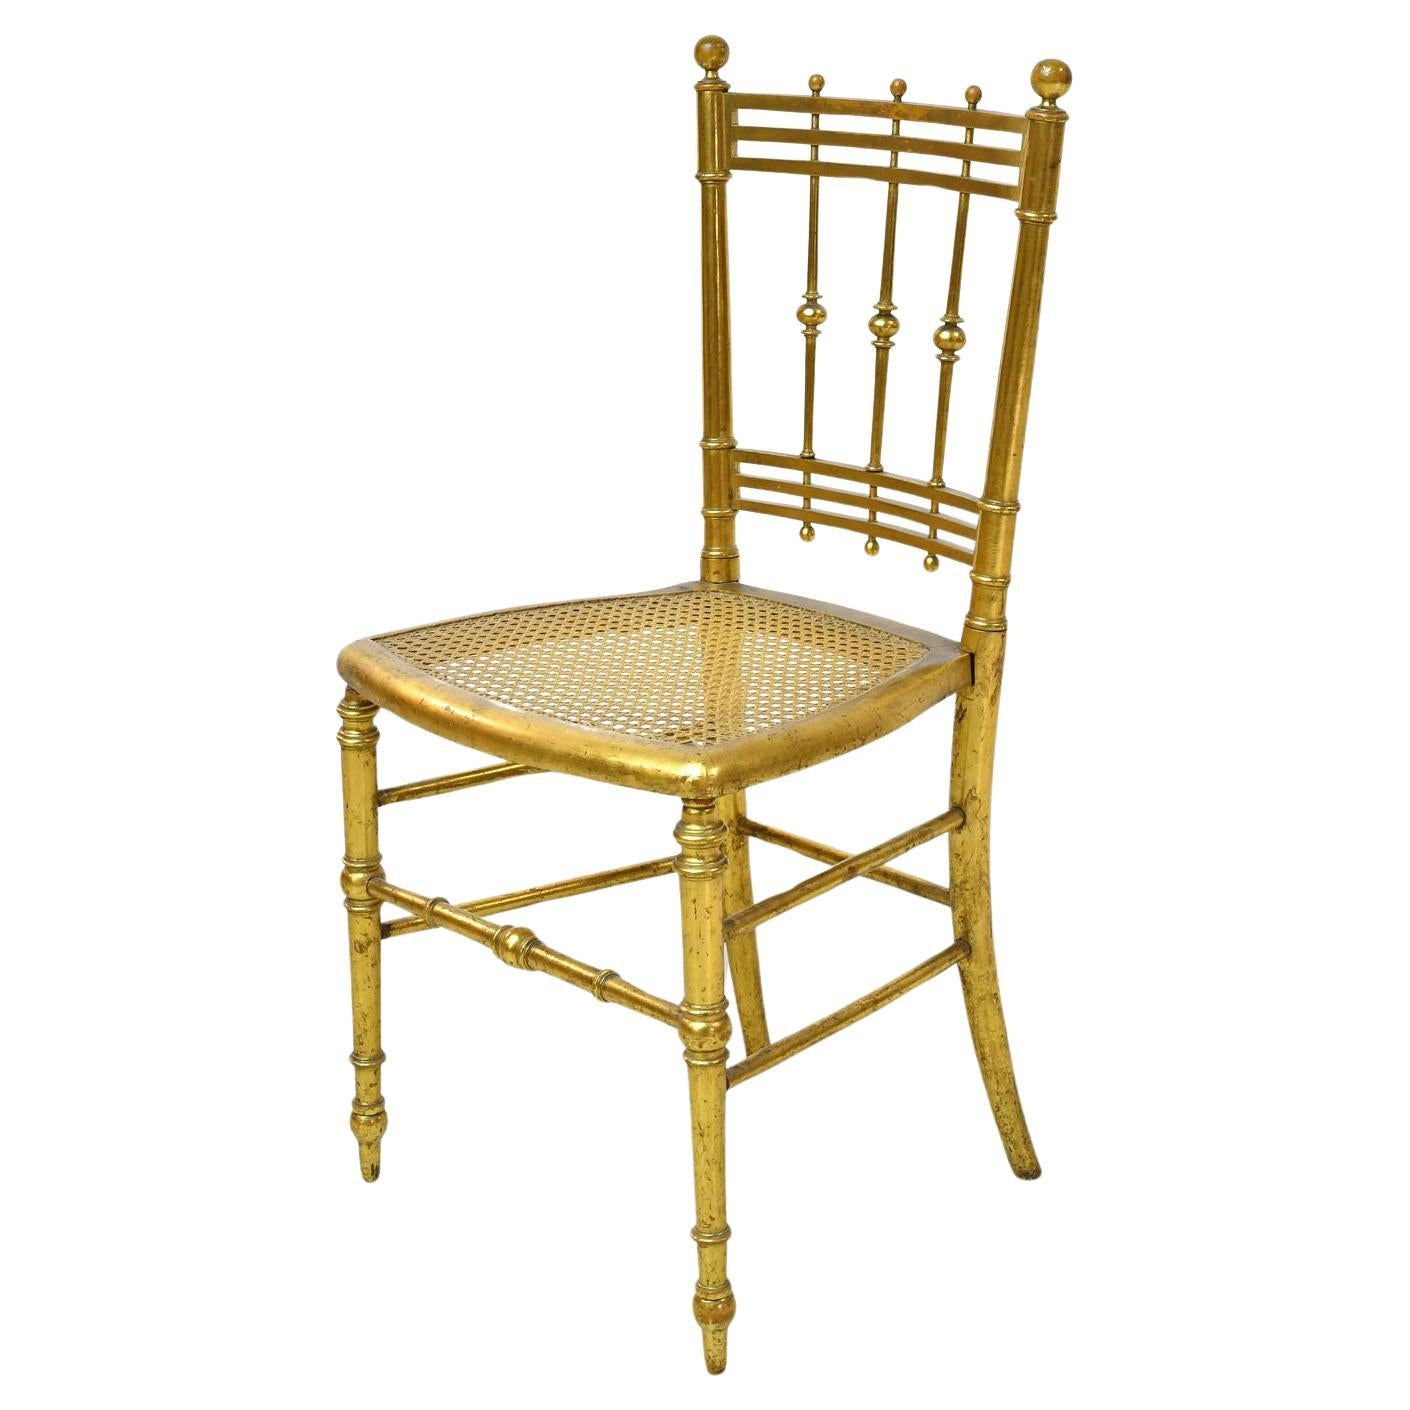 Chaise Belle Époque française du début du 20e siècle en Wood Wood doré avec assise en cannage.